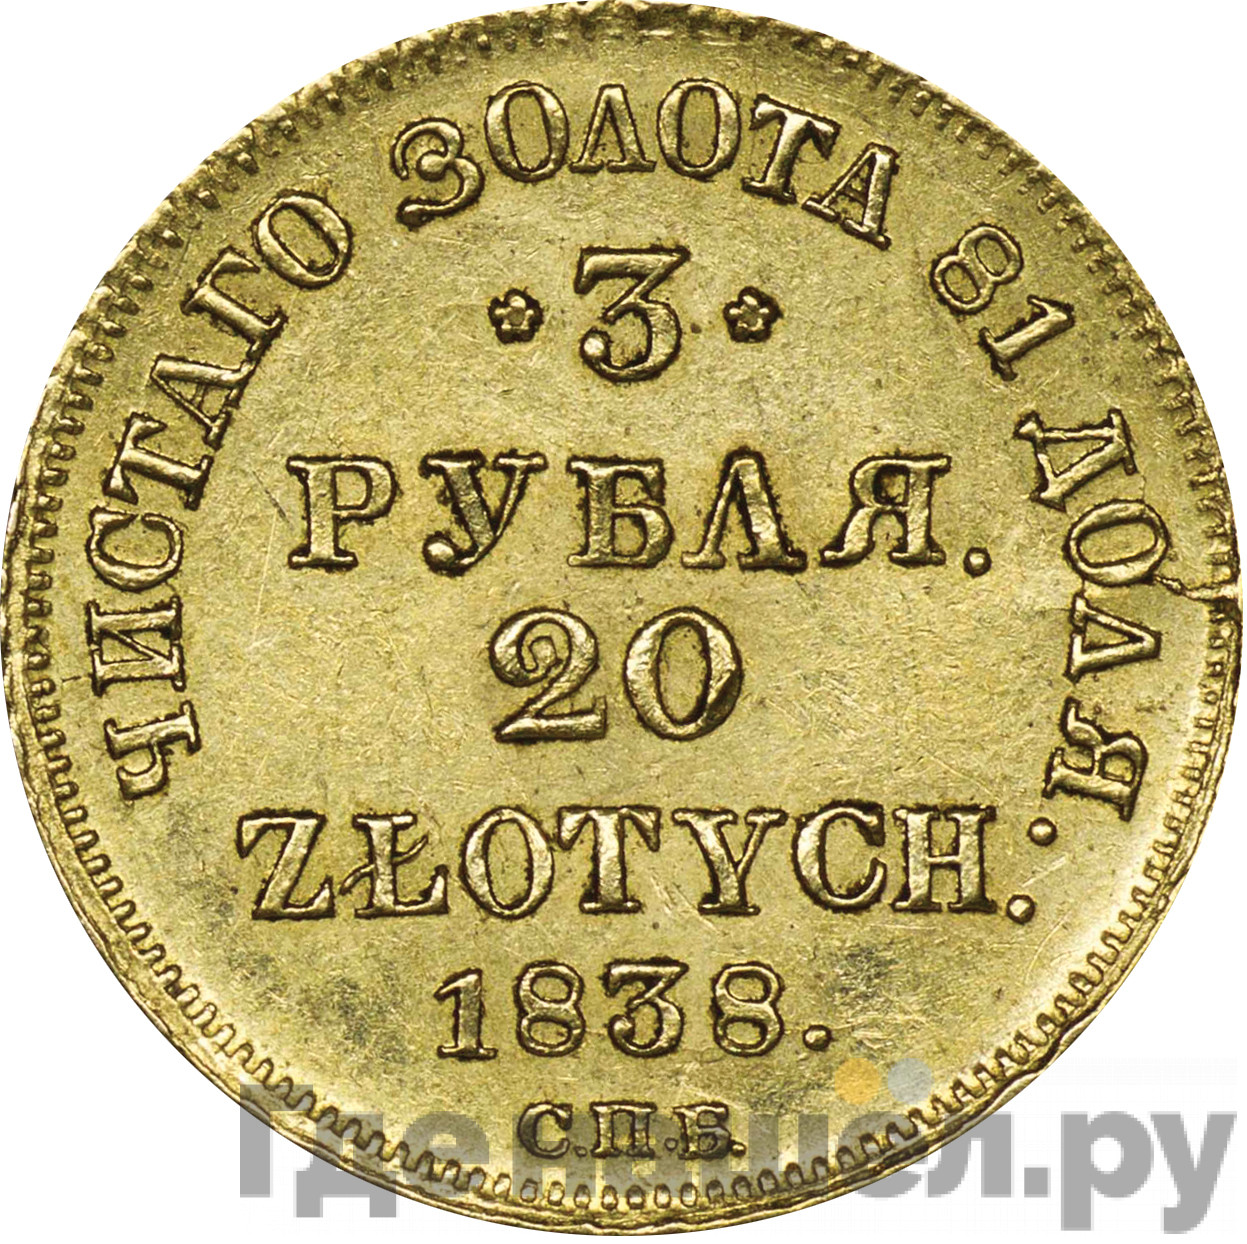 3 рубля - 20 злотых 1838 года